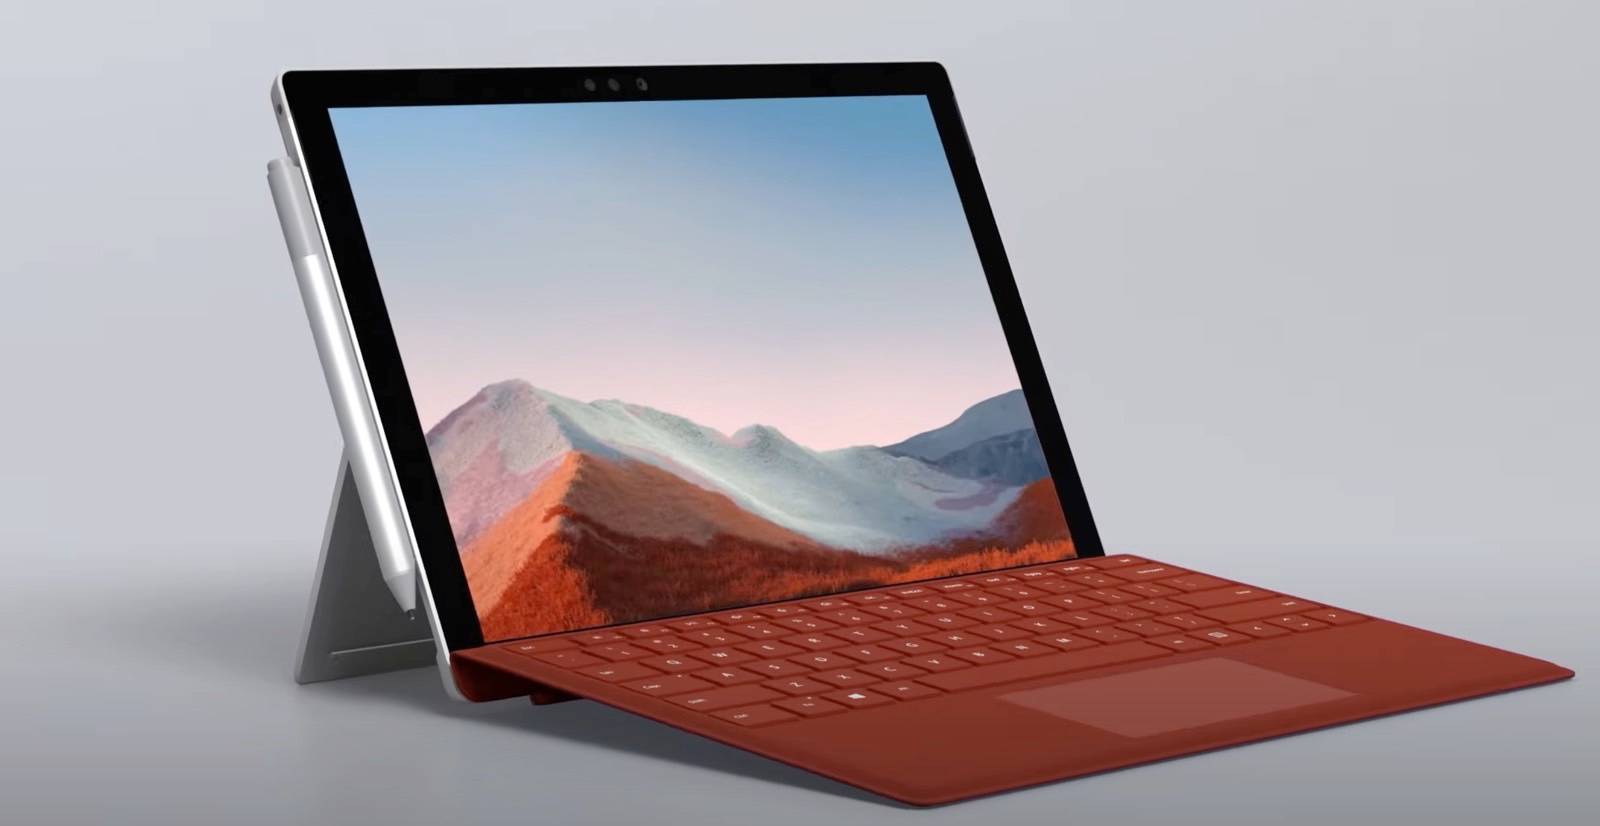 Характеристики и цена Microsoft Surface Pro 8 просочились в последнюю минуту